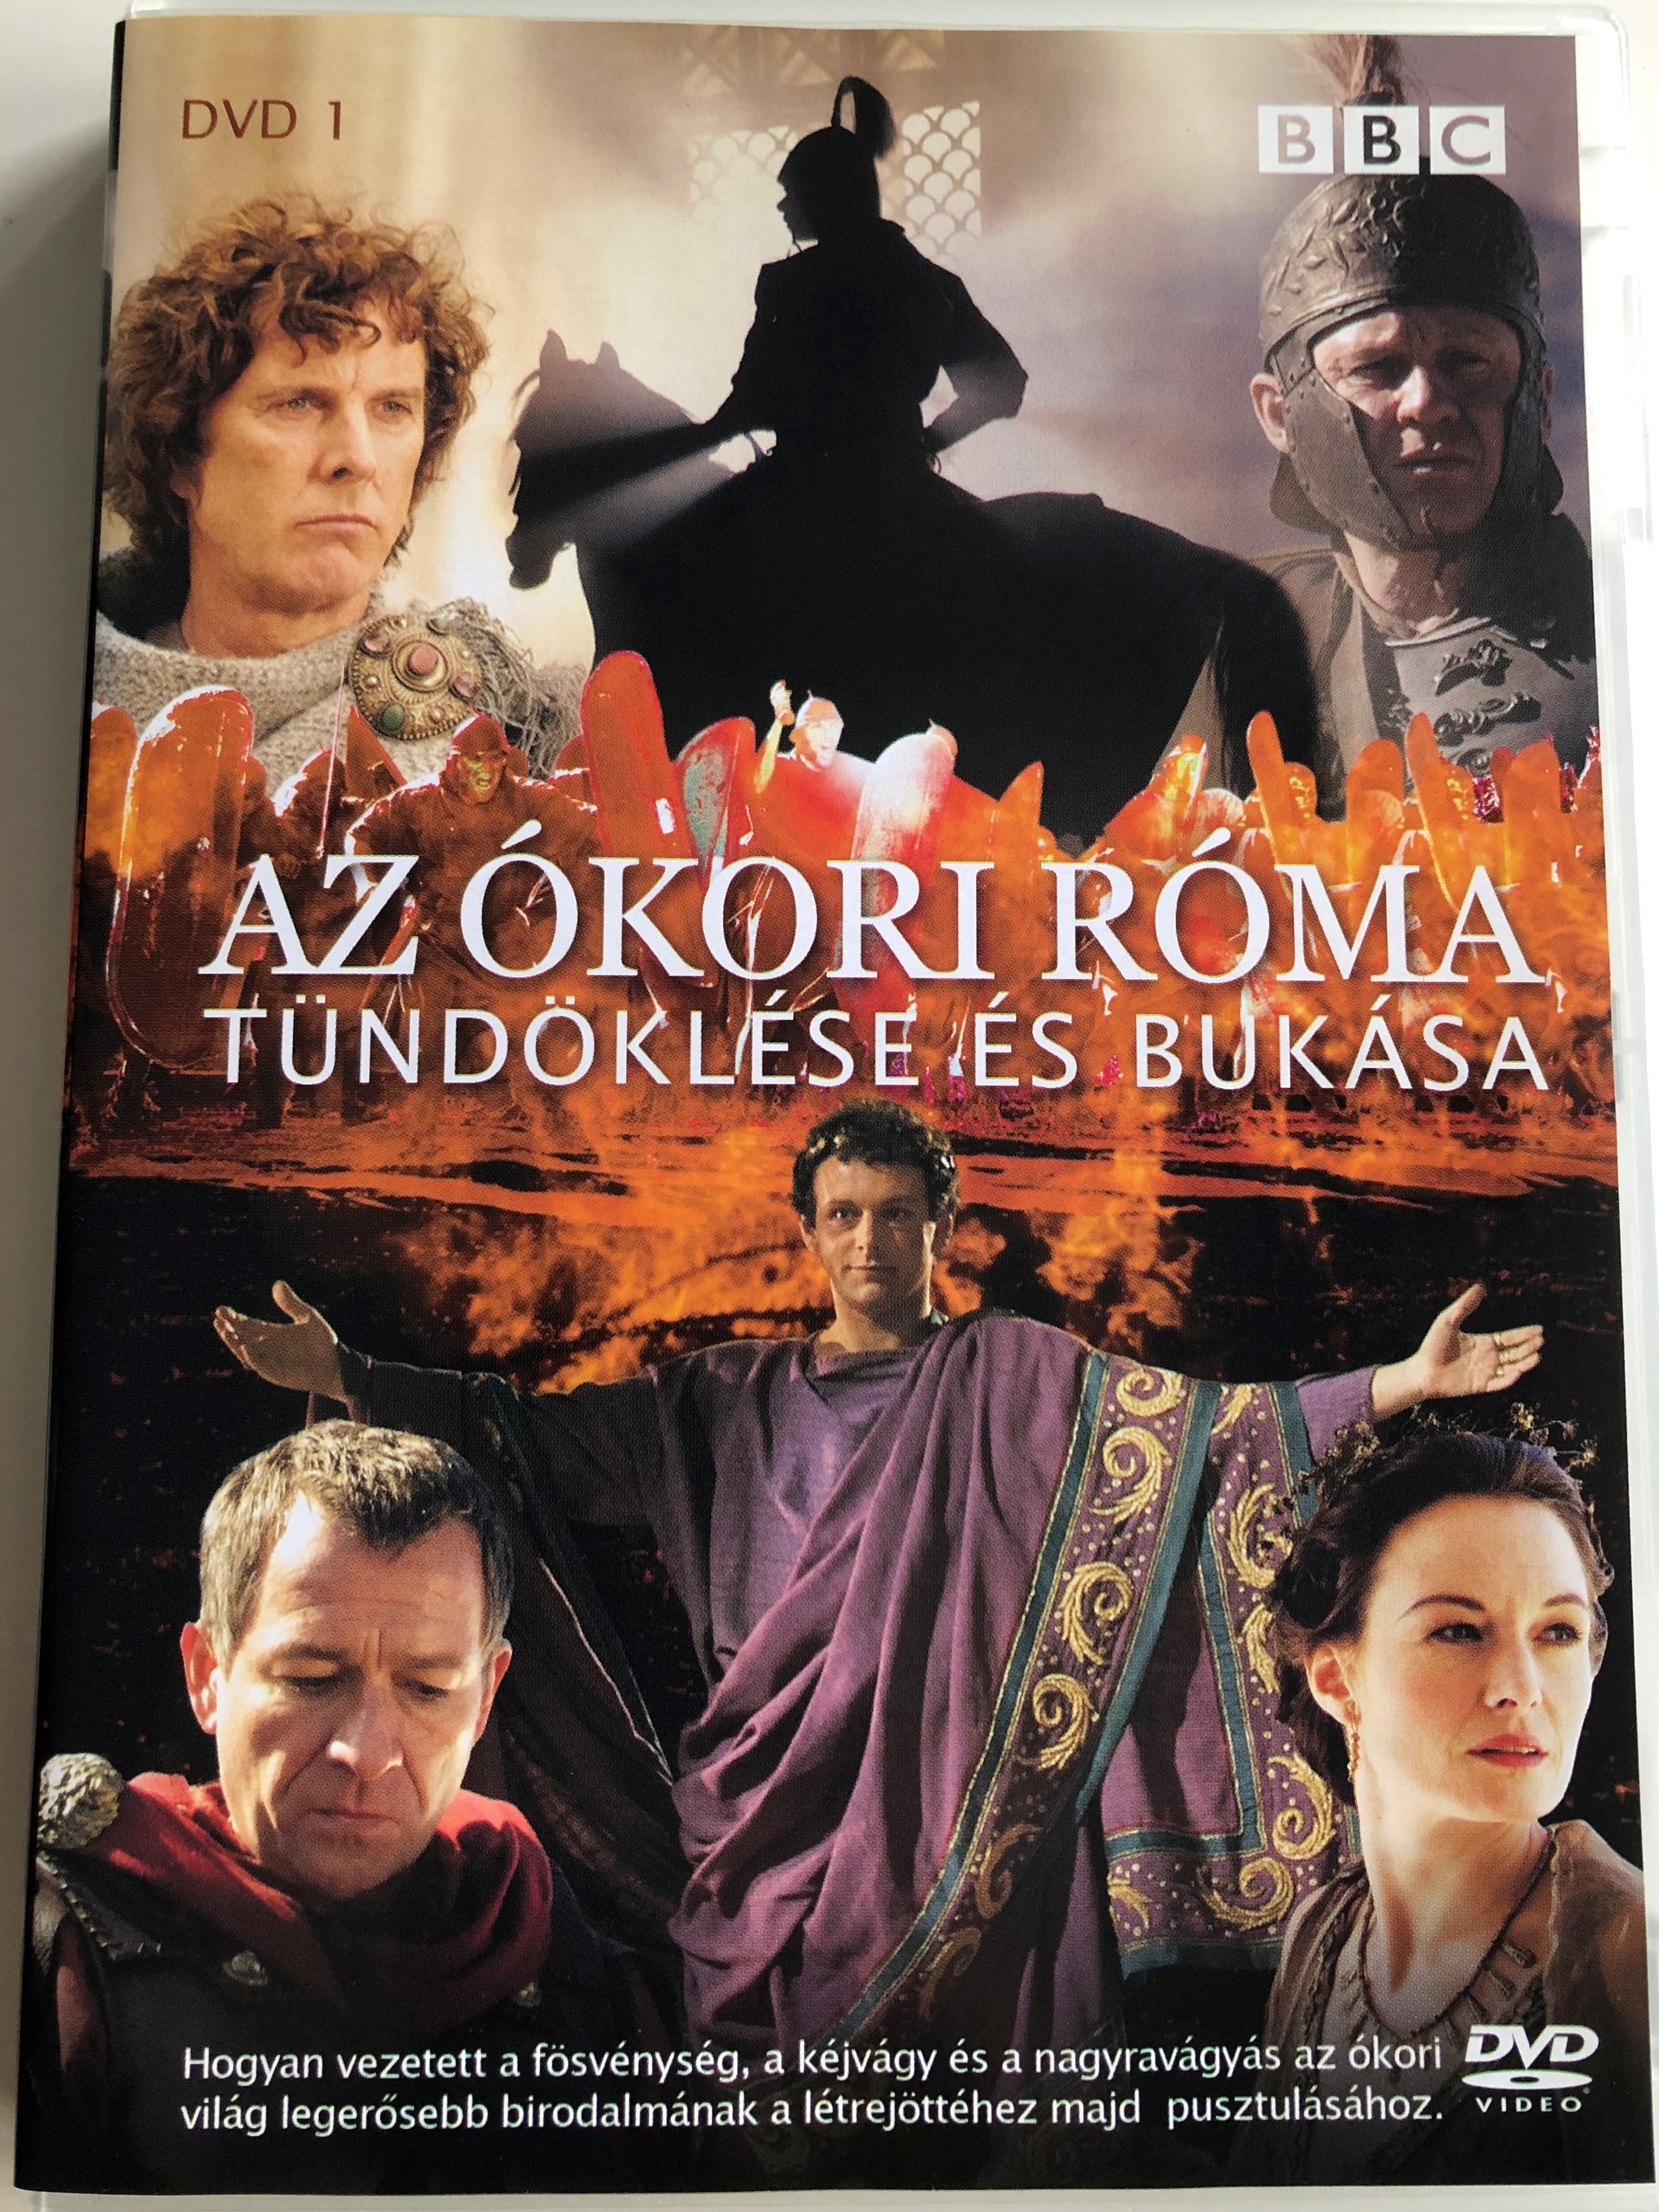 ancient-rome-dvd-2006-az-kori-r-ma-t-nd-kl-se-s-buk-sa-1.jpg